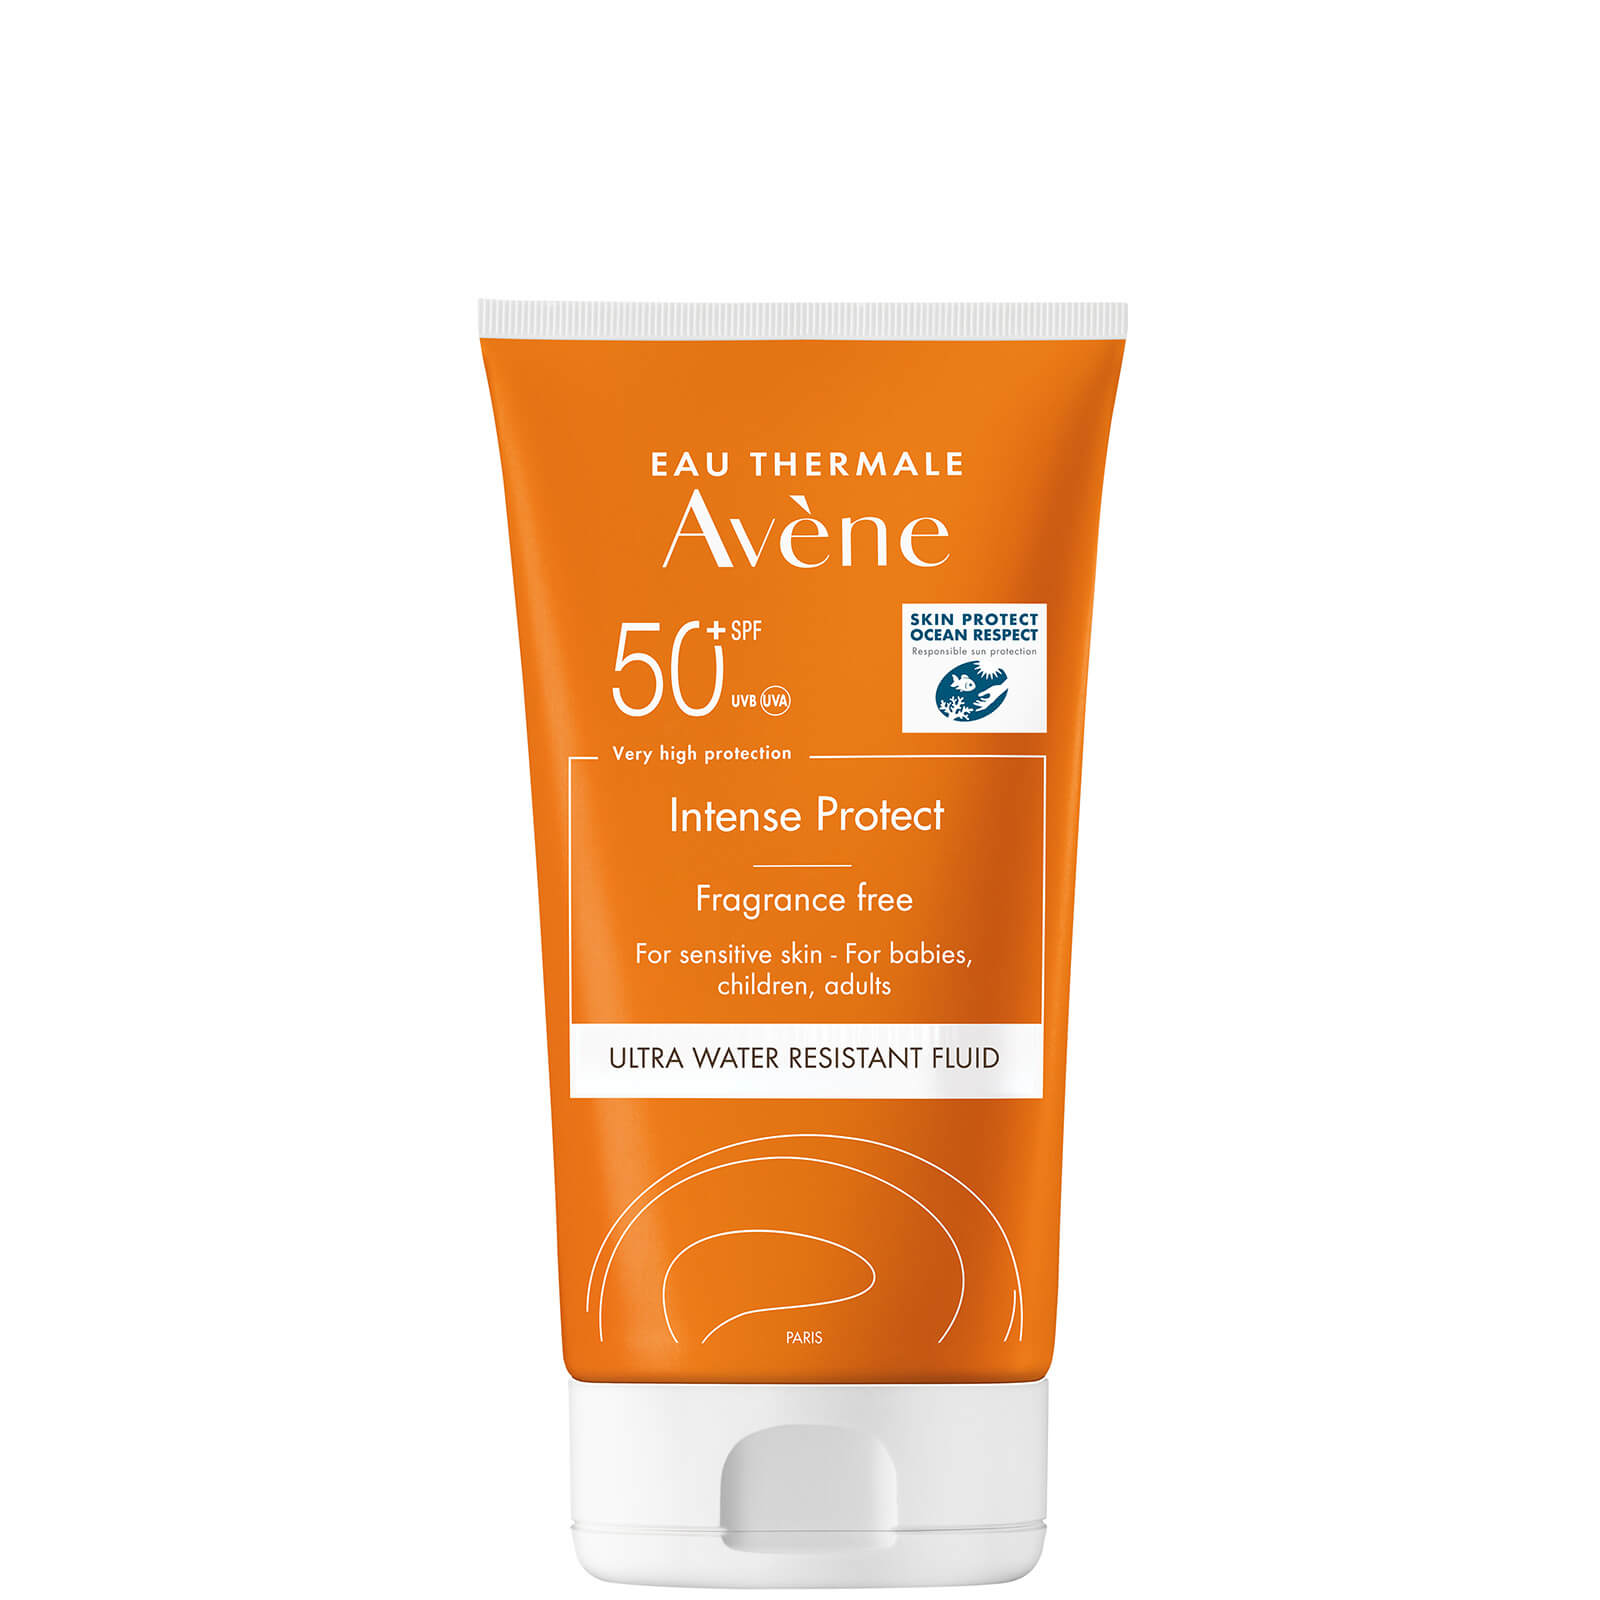 Avene Intense Protect SPF50+ Sun Cream for Very Sensitive Skin 150ml